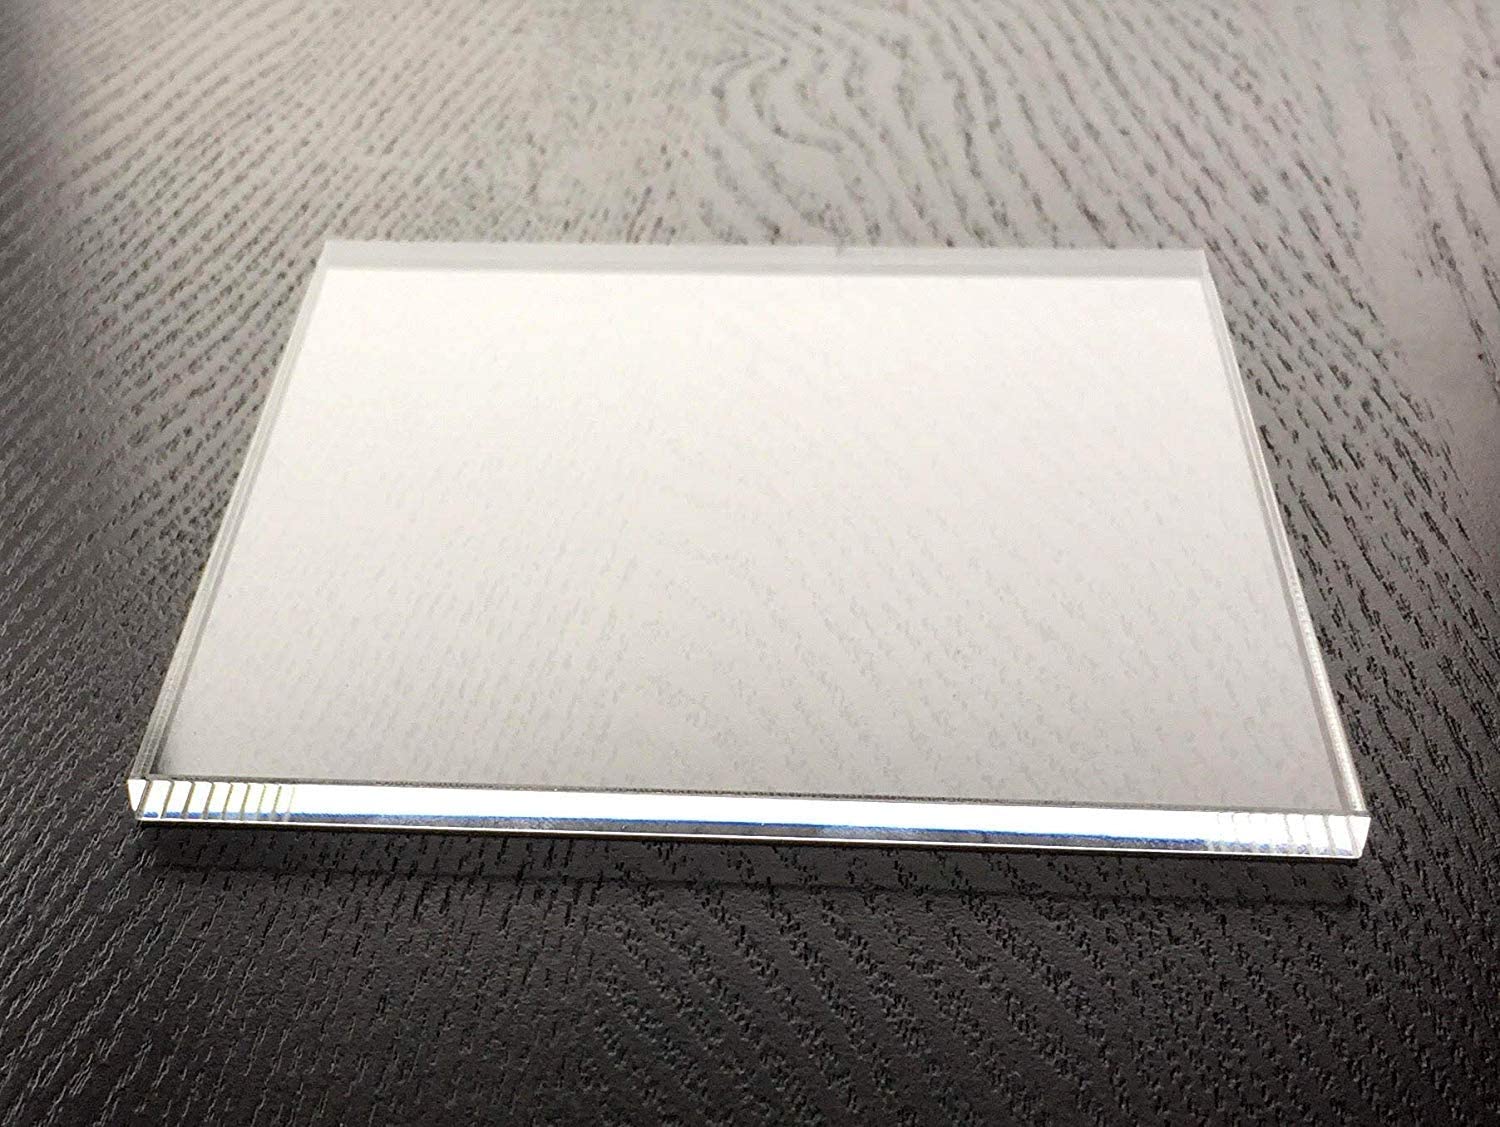 アクリル板 直径1080mm 黒・白色 円形 アクリル板 (キャスト) 板厚3mm テーブルマット 棚板 水槽用ふた アクリルボード - 5